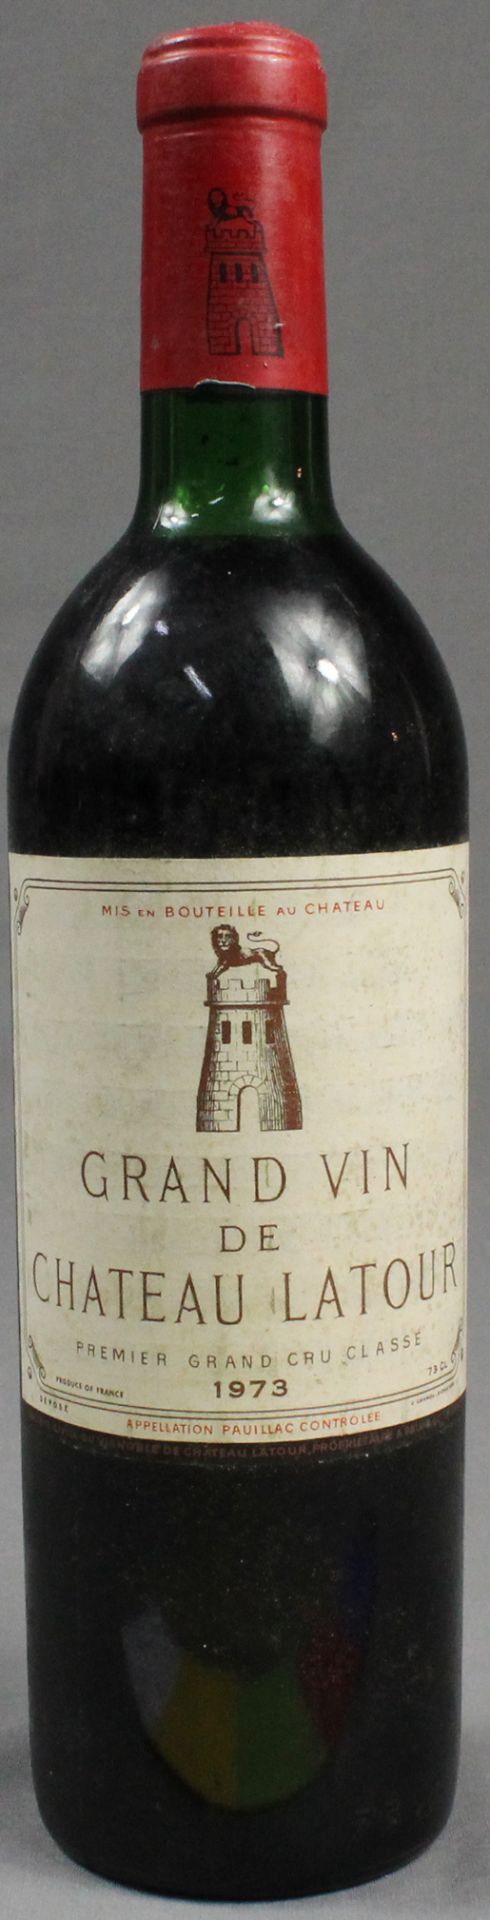 1973 Grand Vin de Chateau Latour.